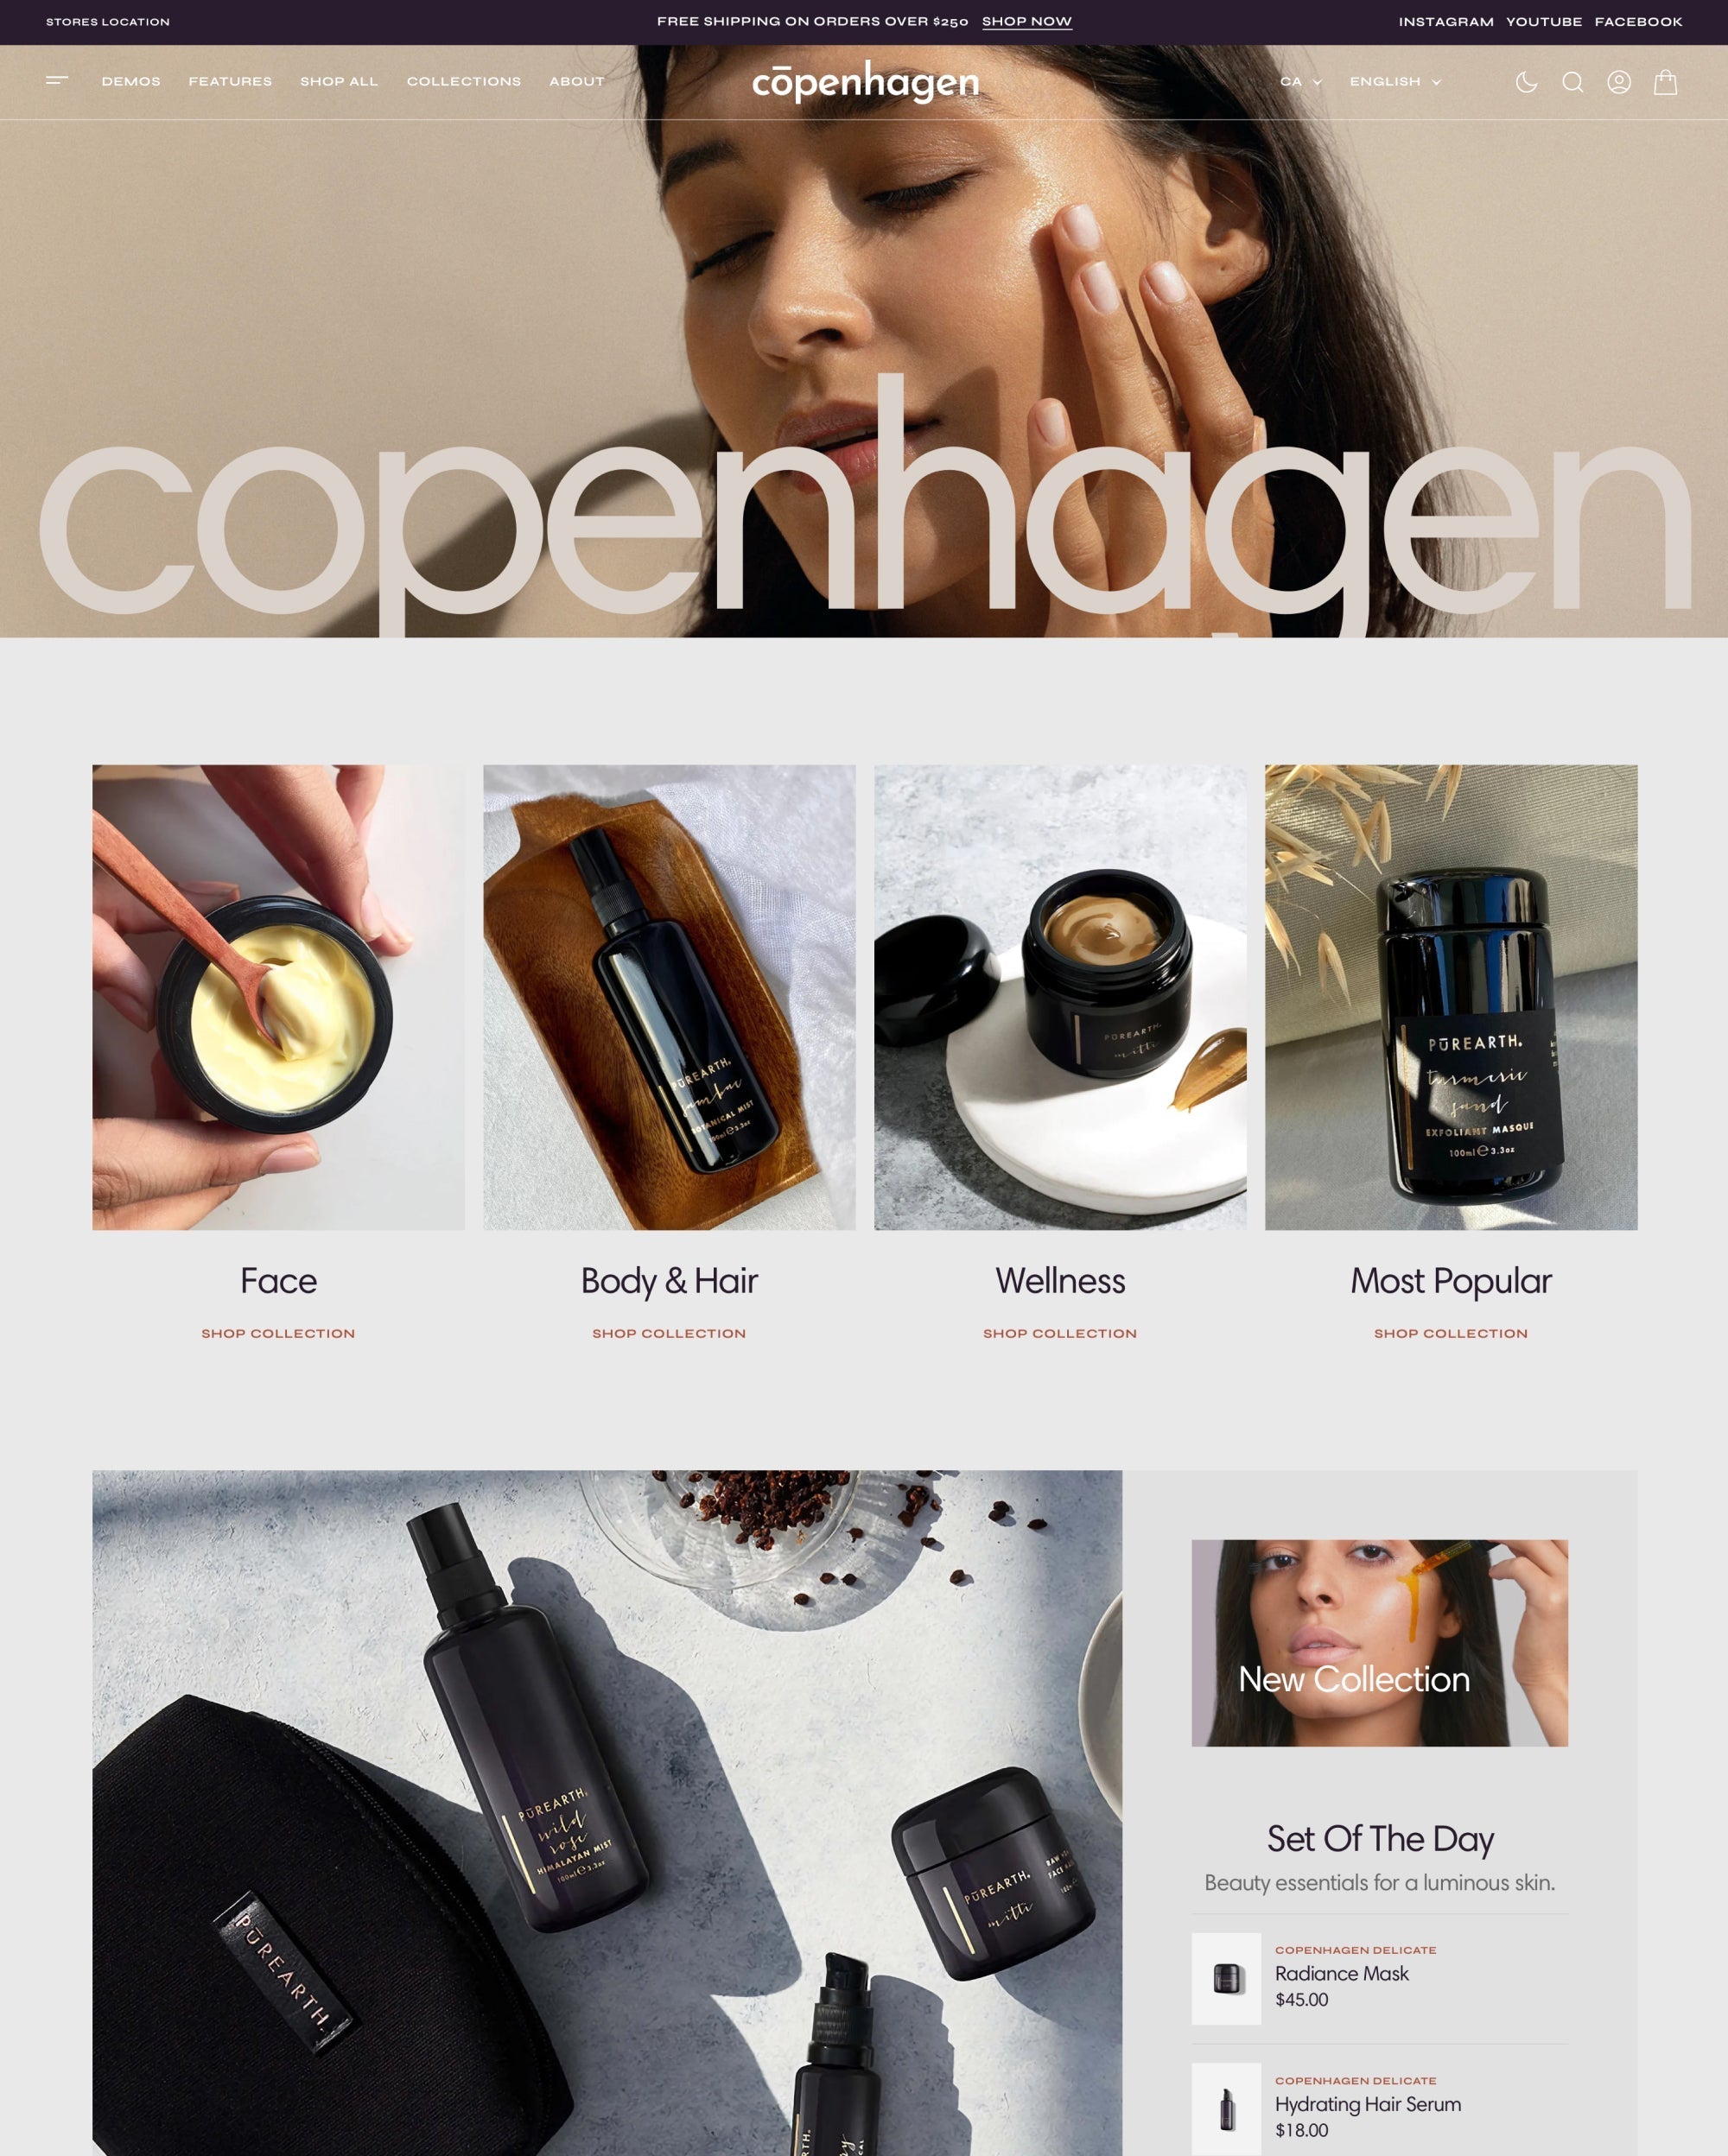 Anteprima in versione desktop del tema Copenhagen nello stile “Delicate”